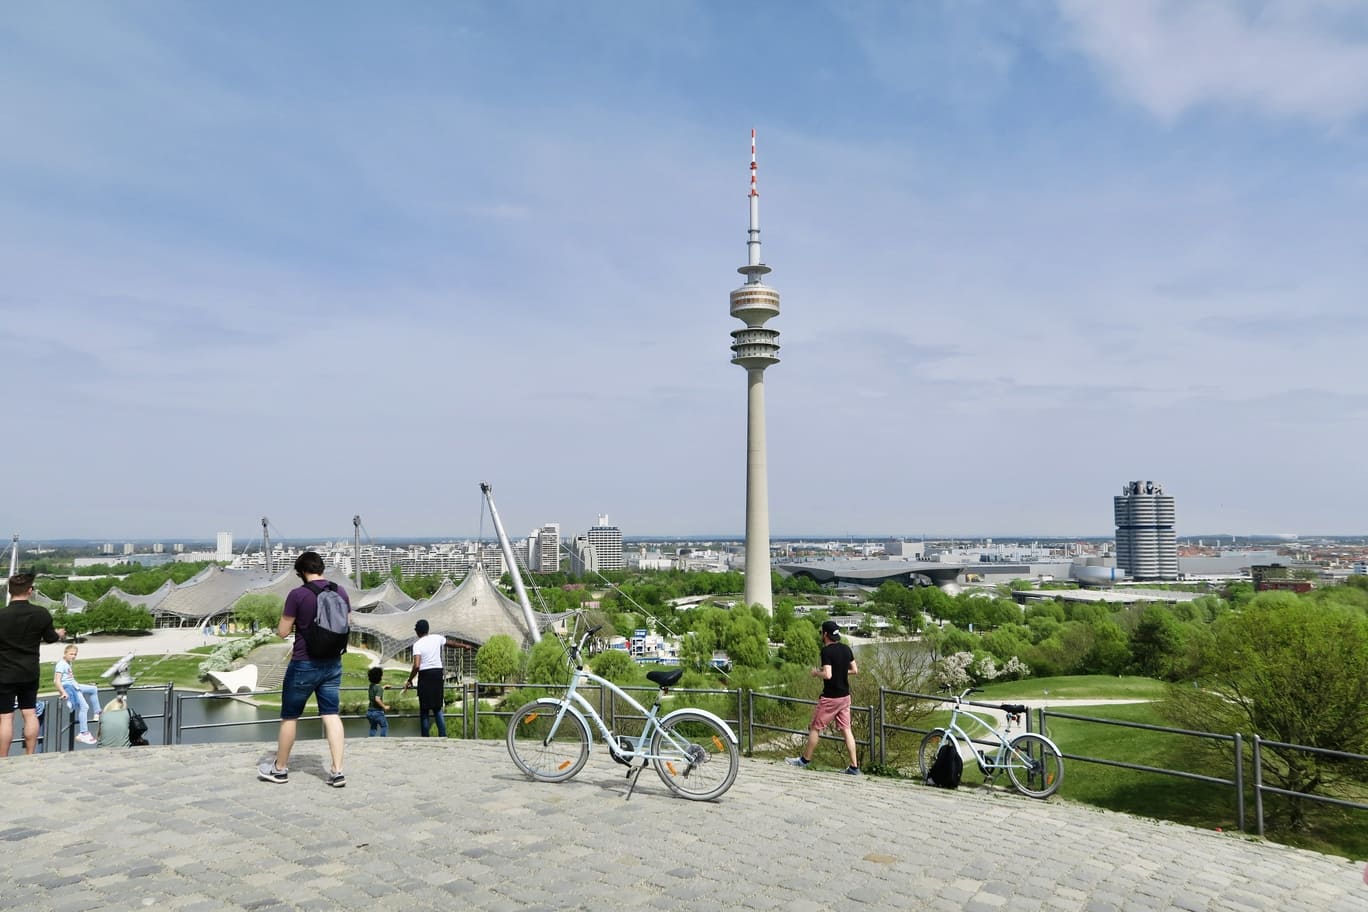 【慕尼黑自由行懶人包】慕尼黑住宿、景點、行程、美食、交通自助攻略